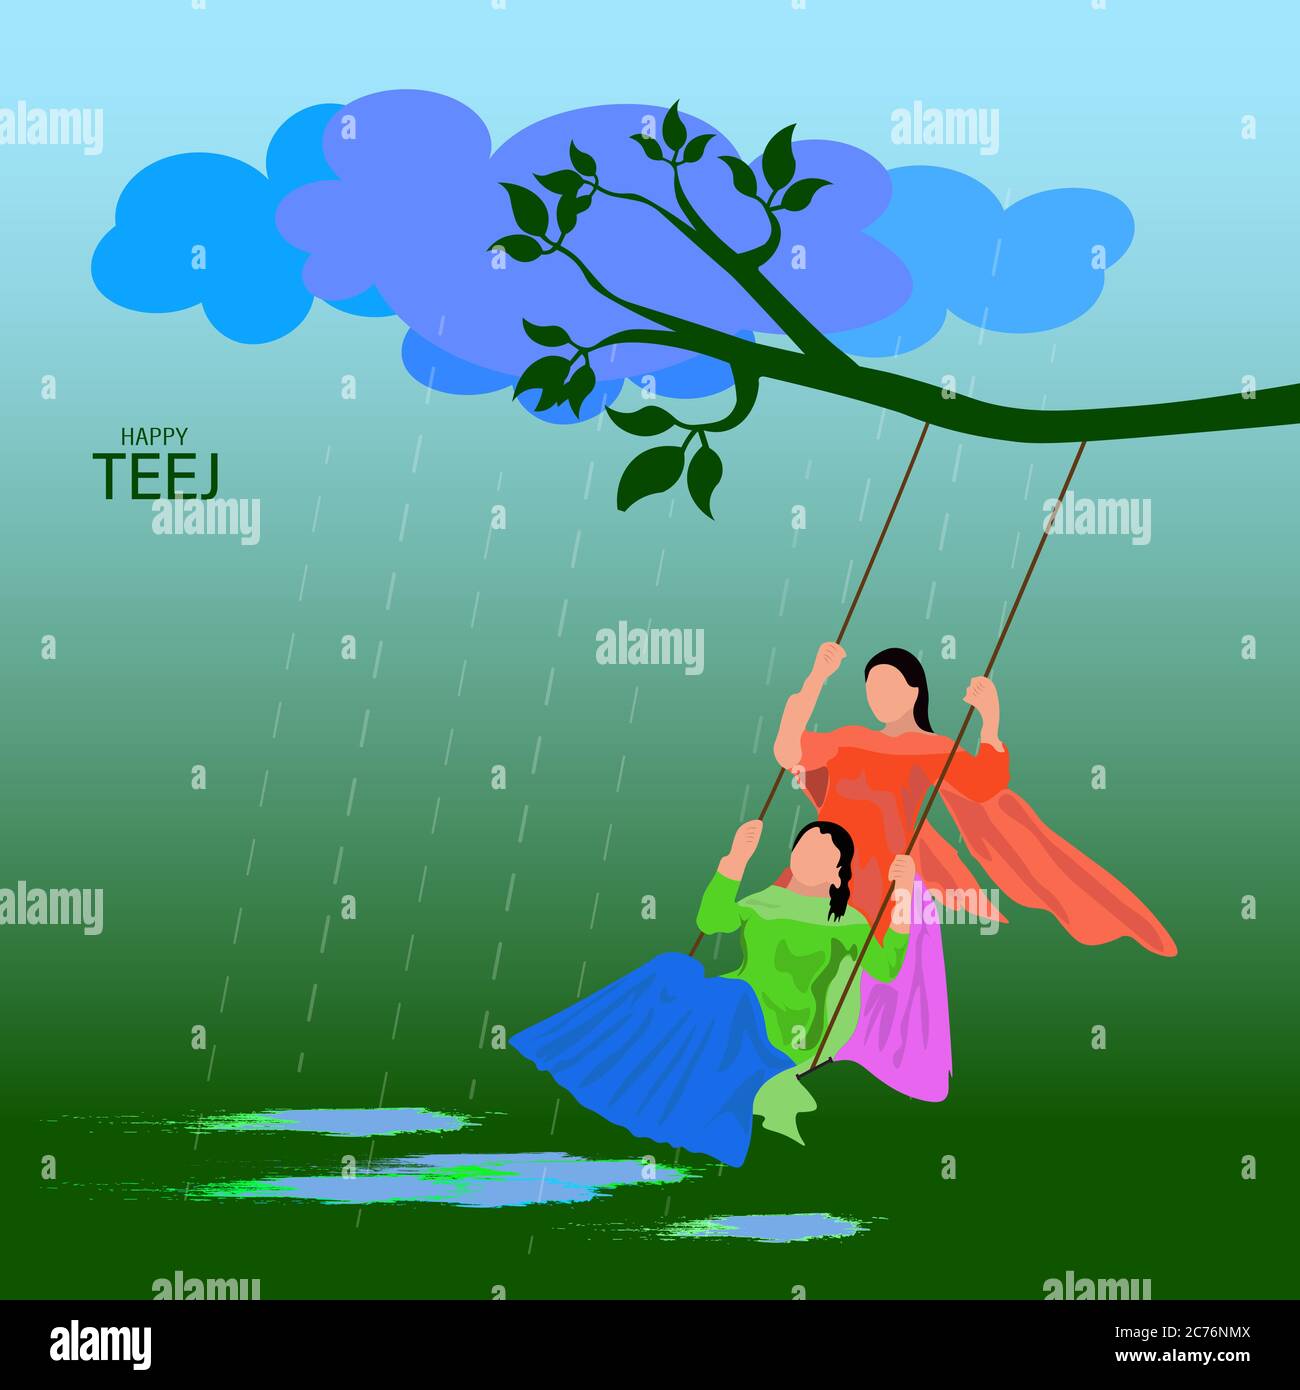 Teej Celebration: Women Oriented Monsoon Festival of Swings (2021)